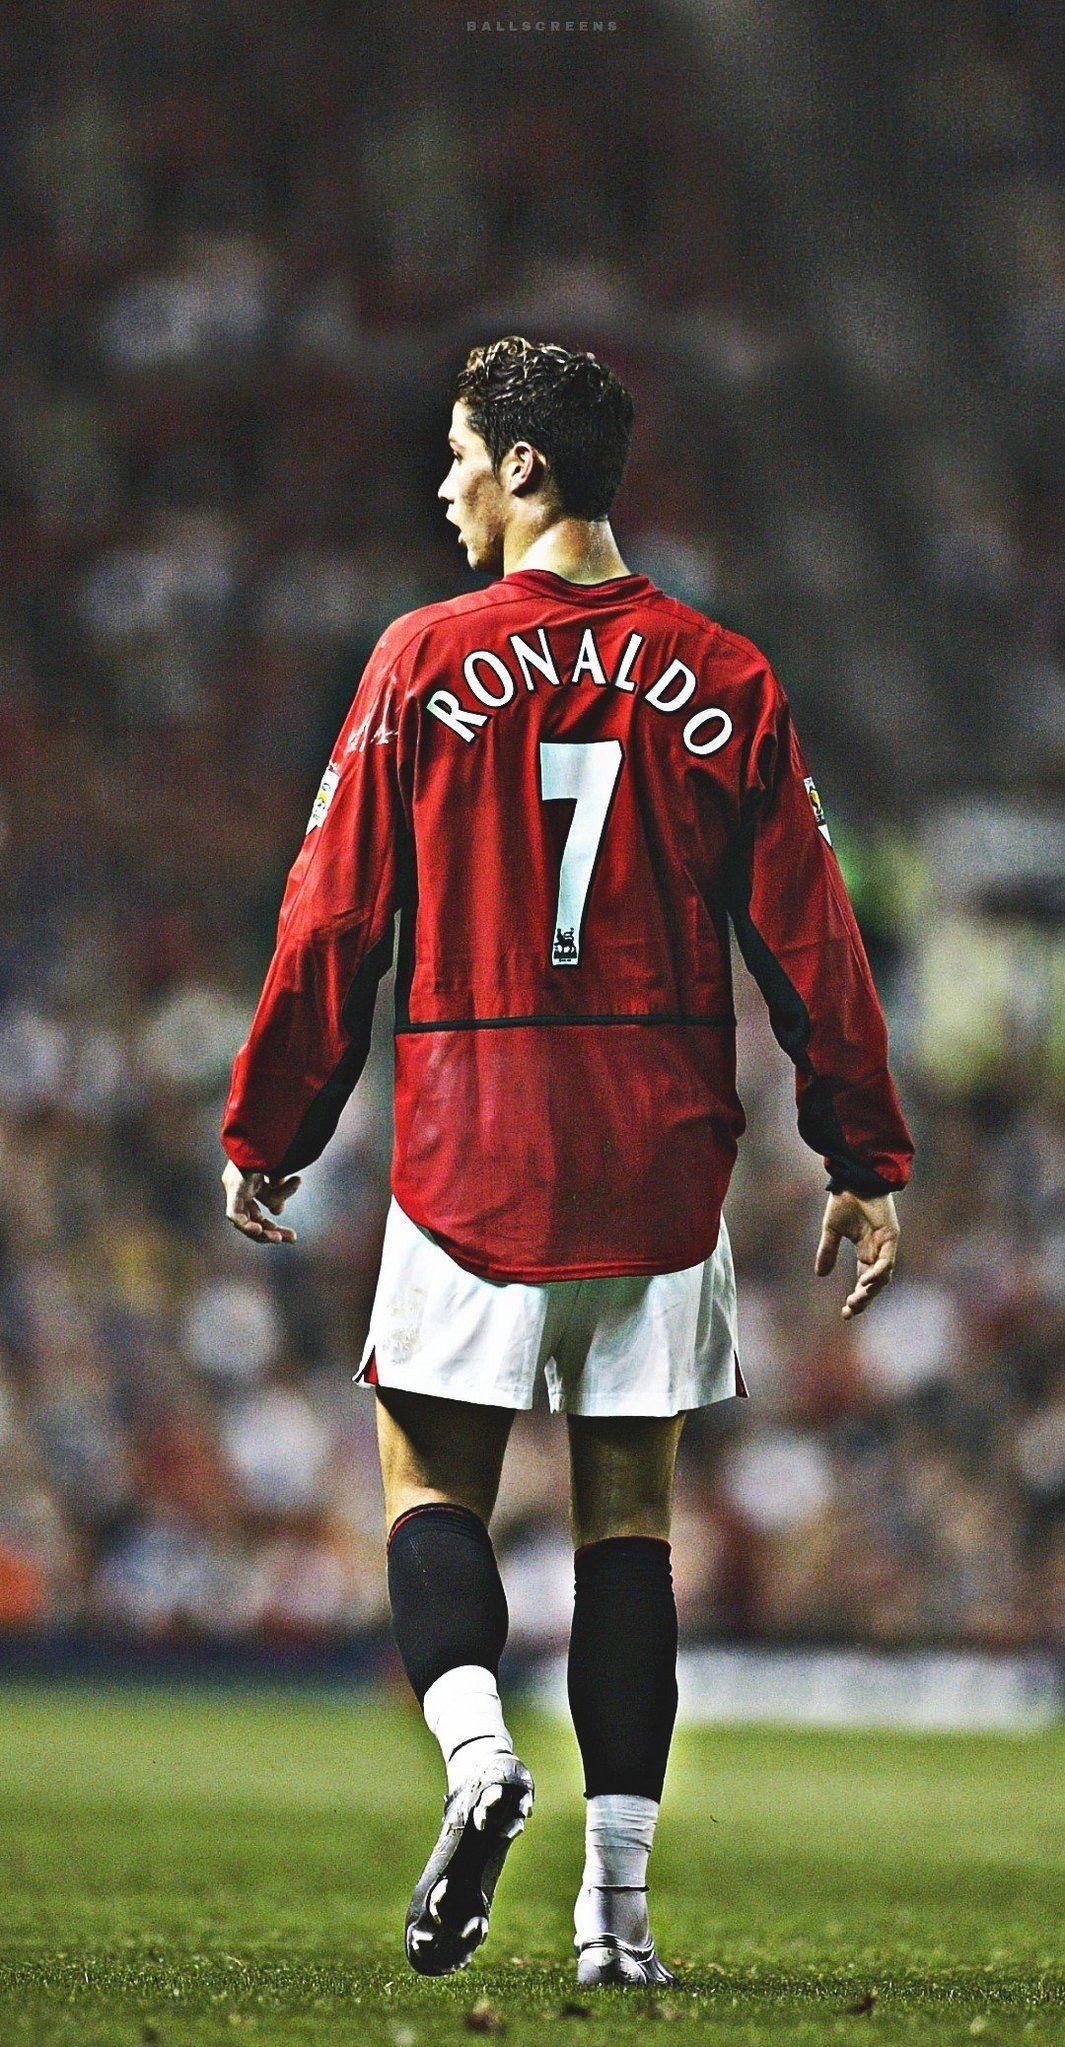 Cristiano Ronaldo Manchester United Wallpapers Top Free Cristiano